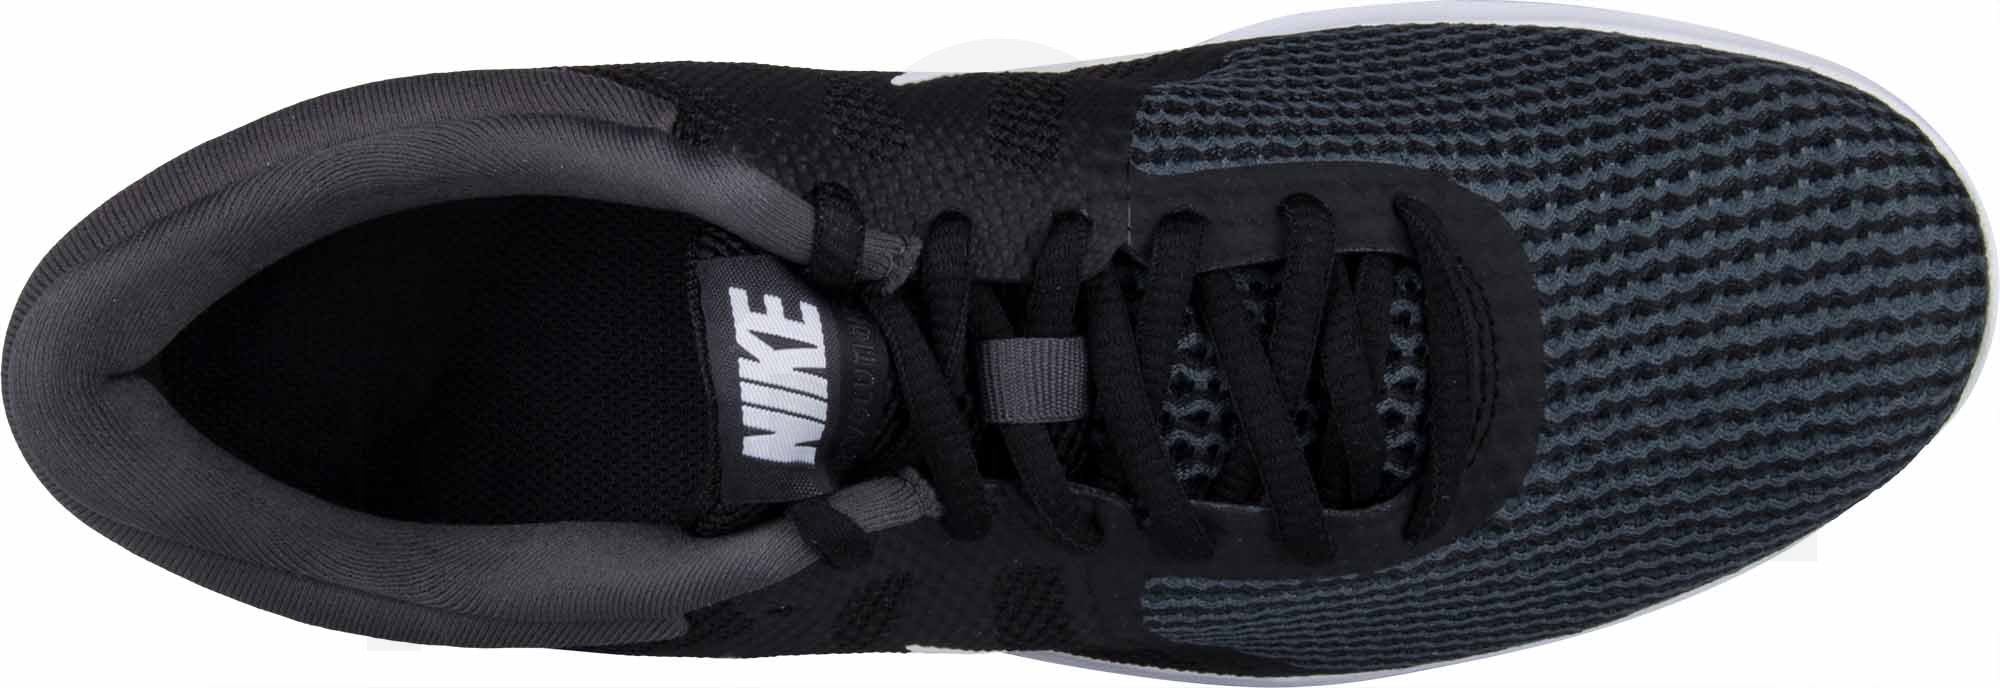 Obuv Nike Revolution 4 - černá